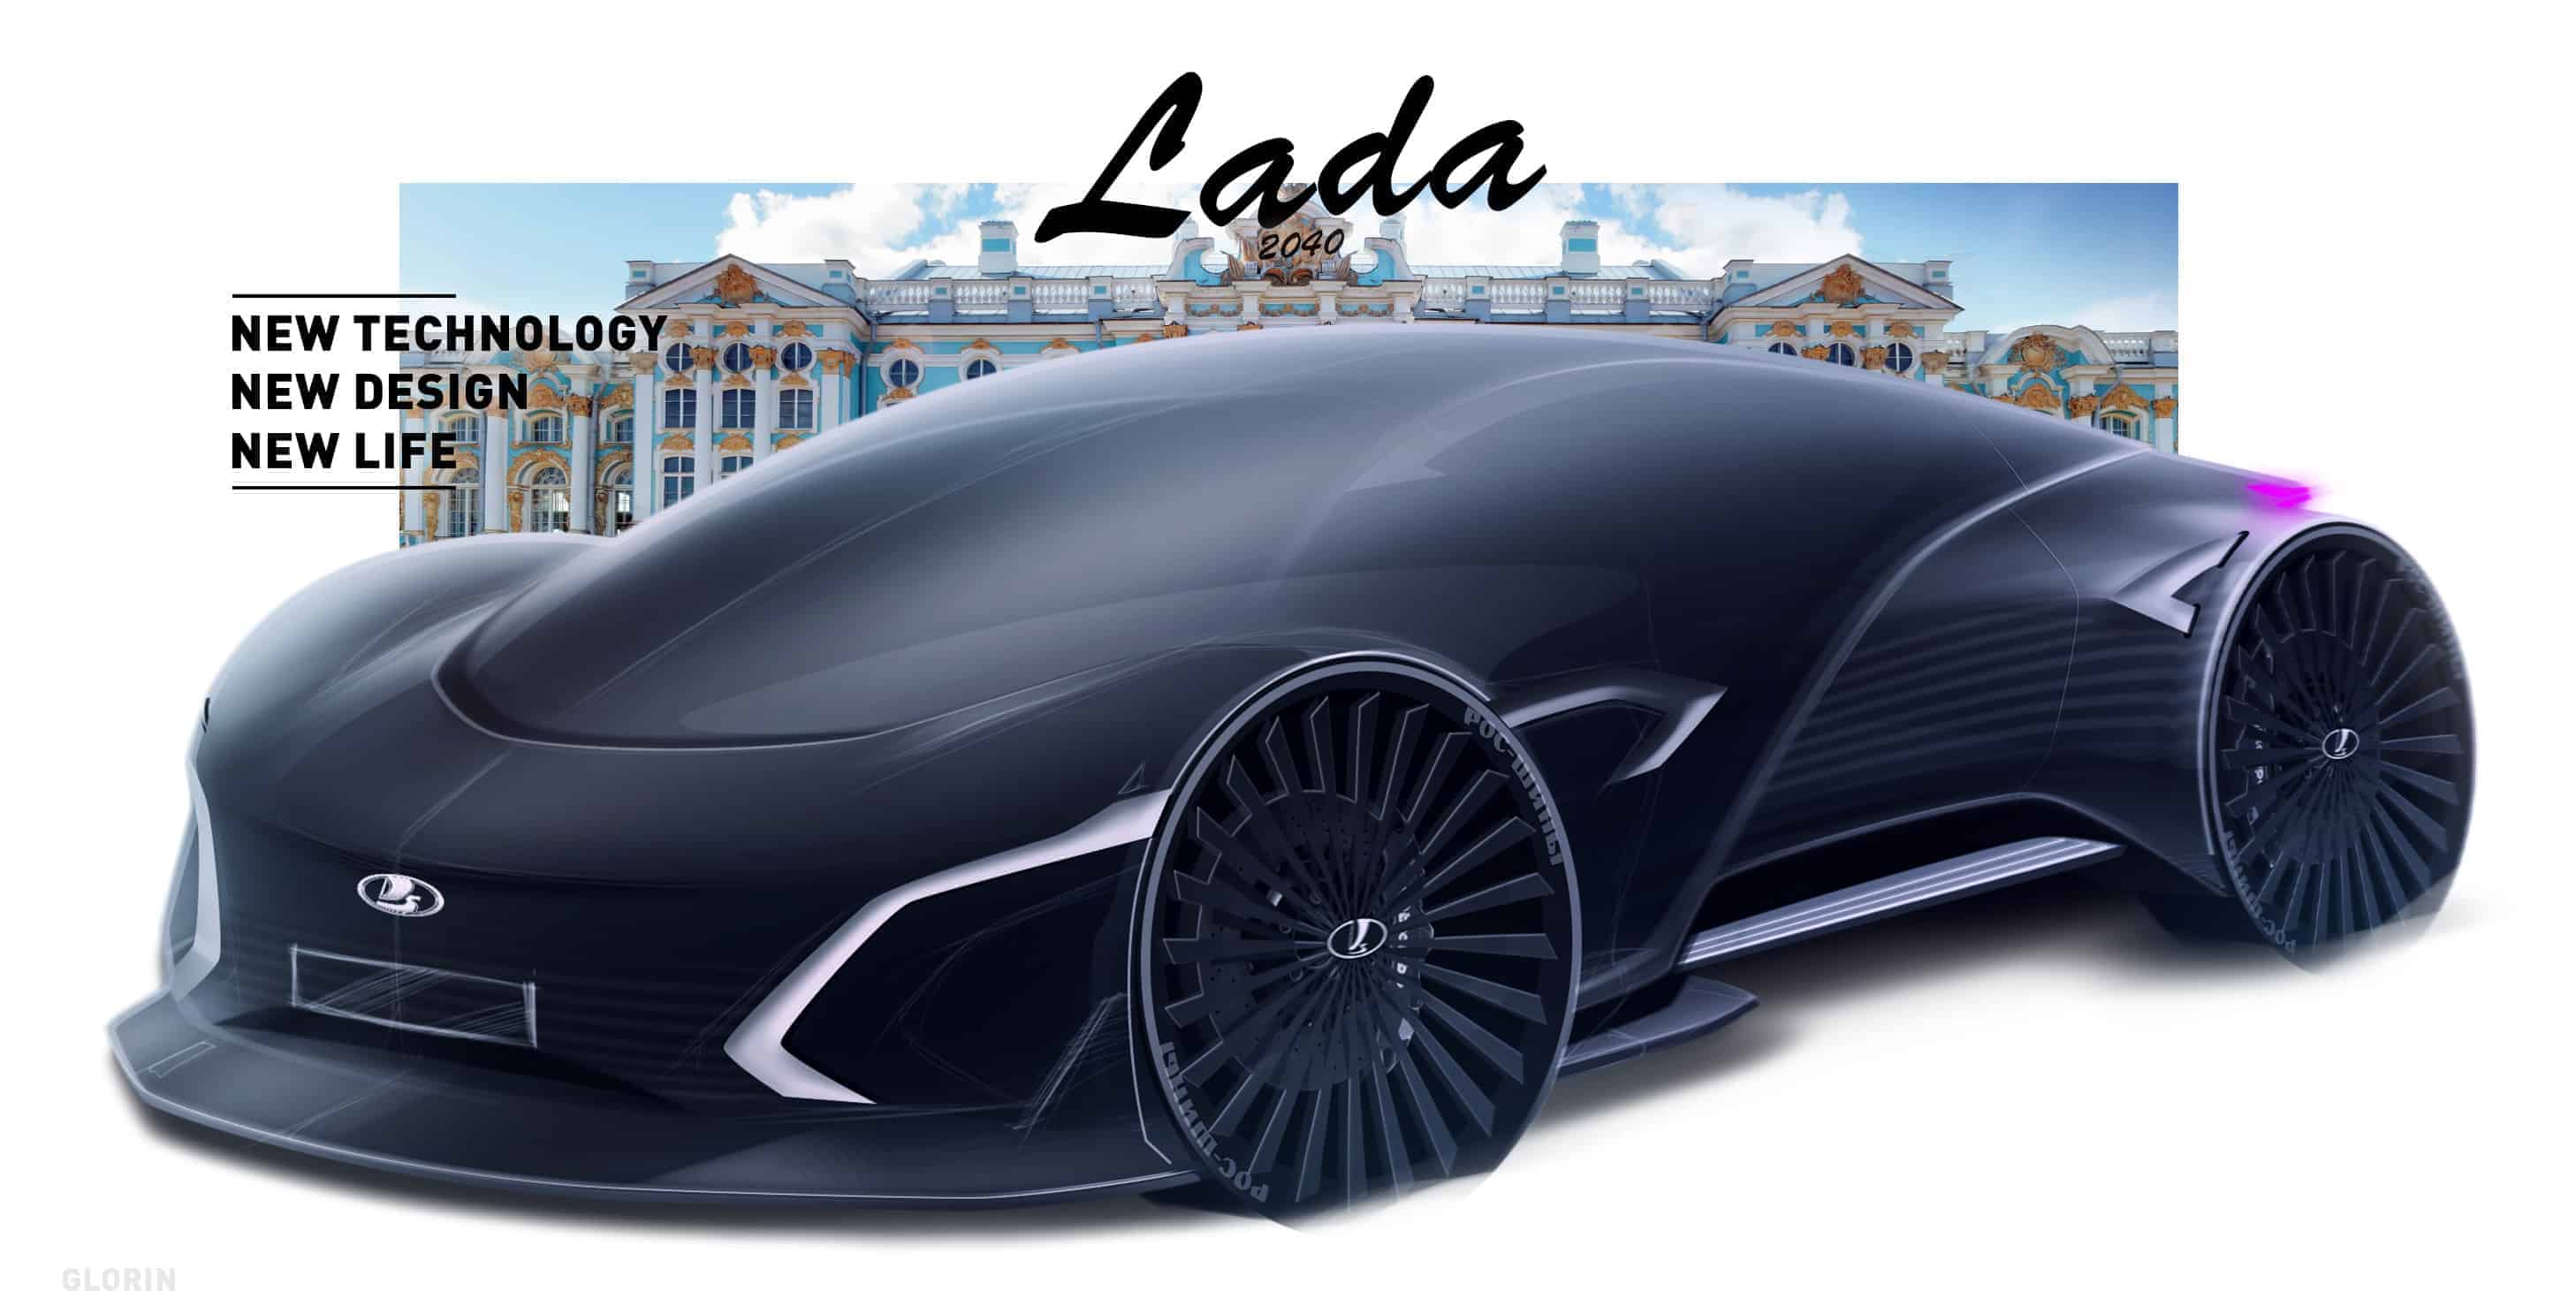 LADA Future Vision 2040 Concept